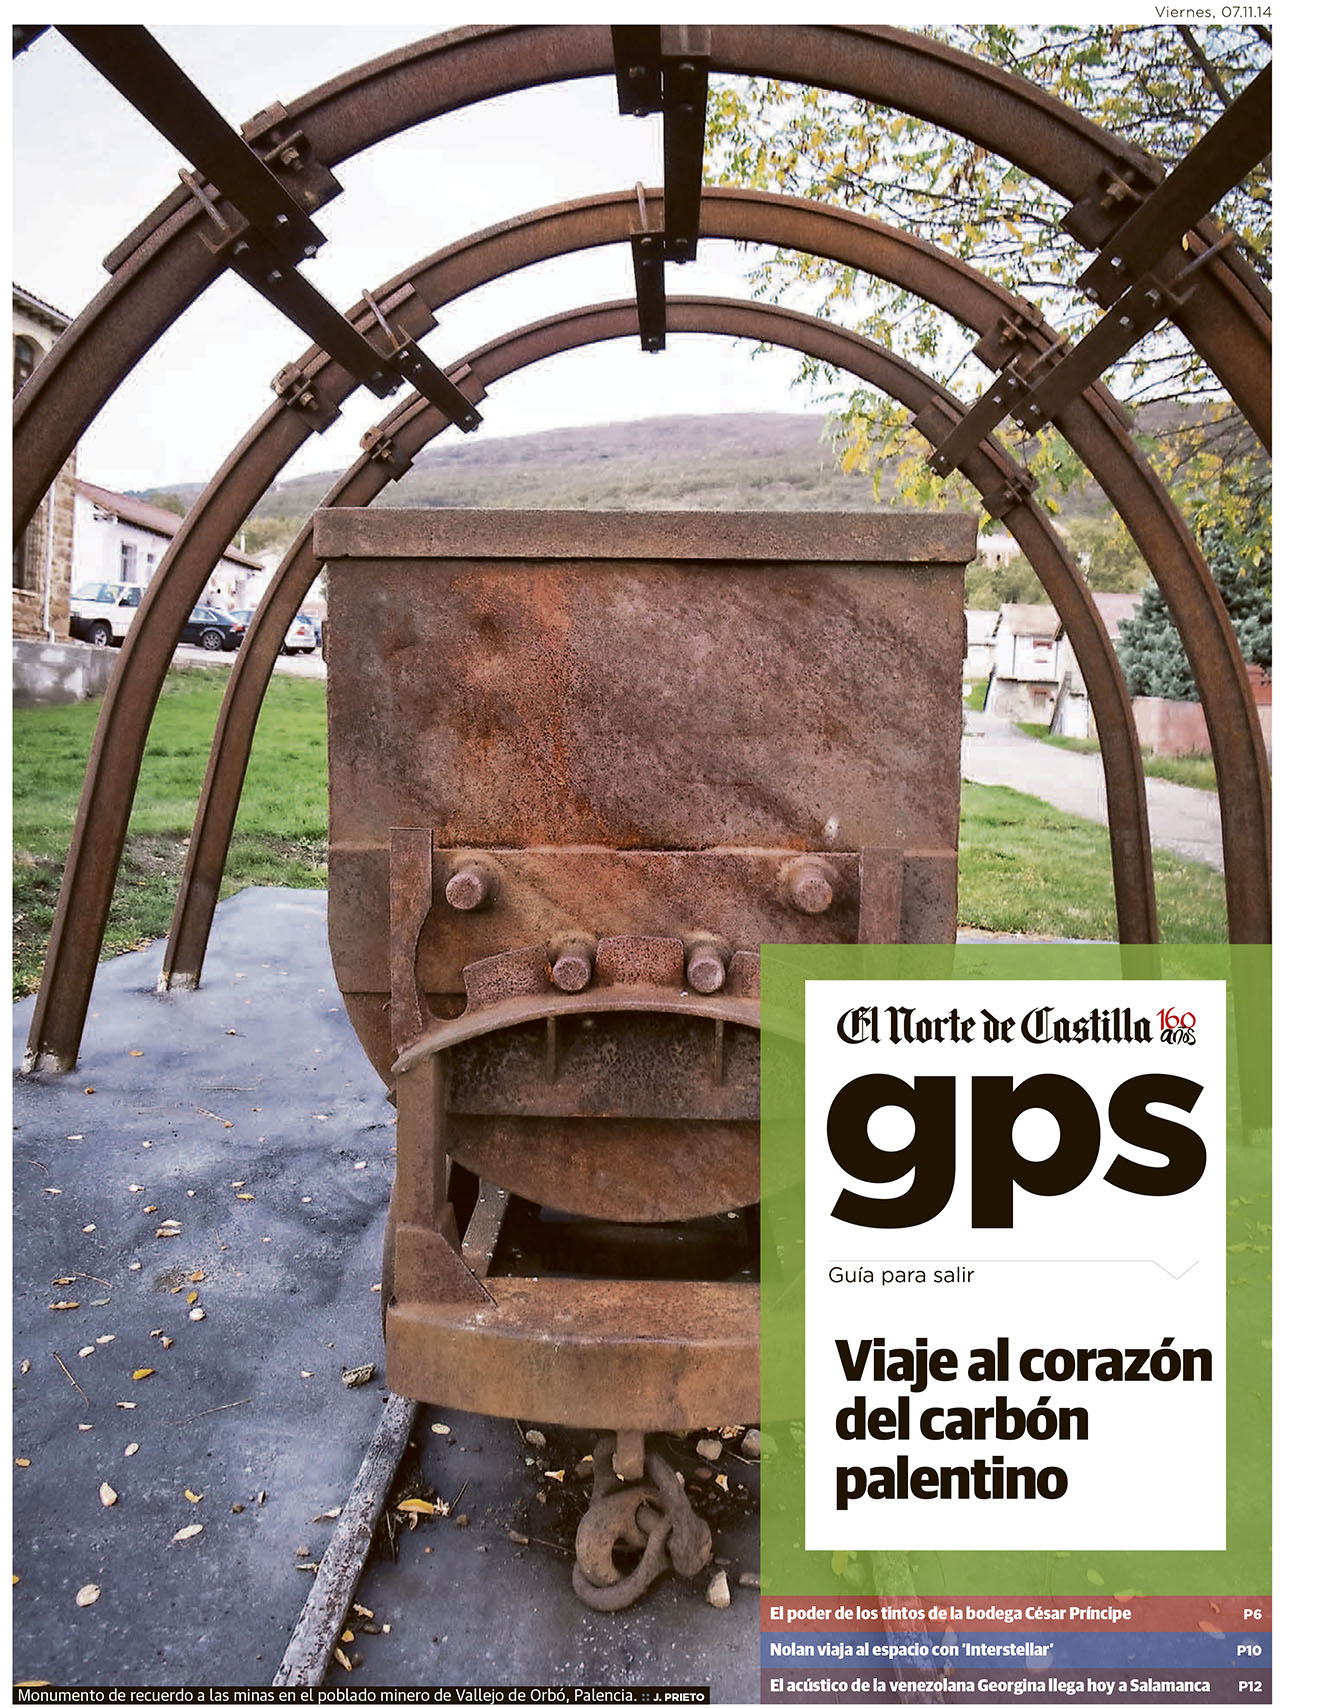 Visita minera a Barruelo de Santillán (Palencia). Reportaje publicado por Javier Prieto Gallego.